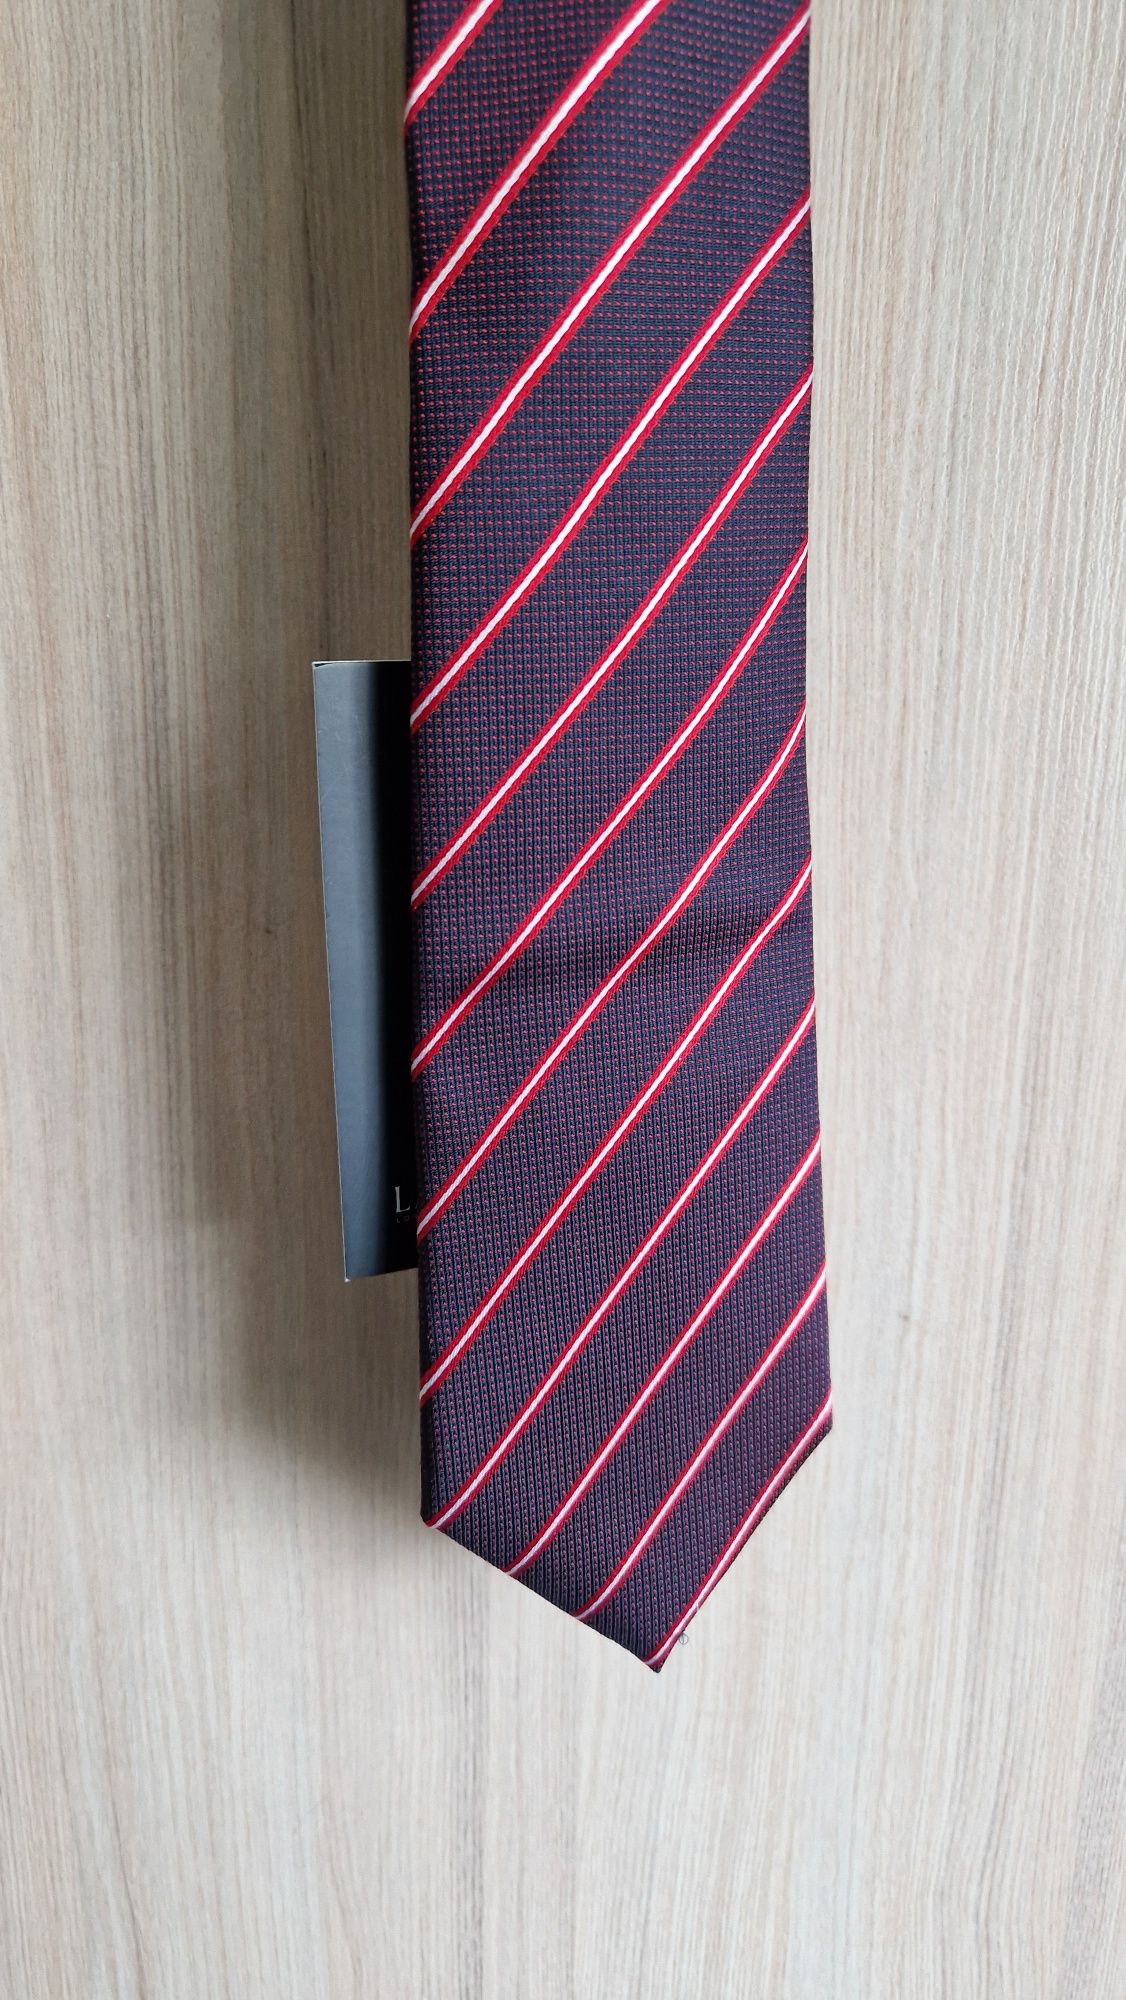 Nowy krawat Lambert bordo